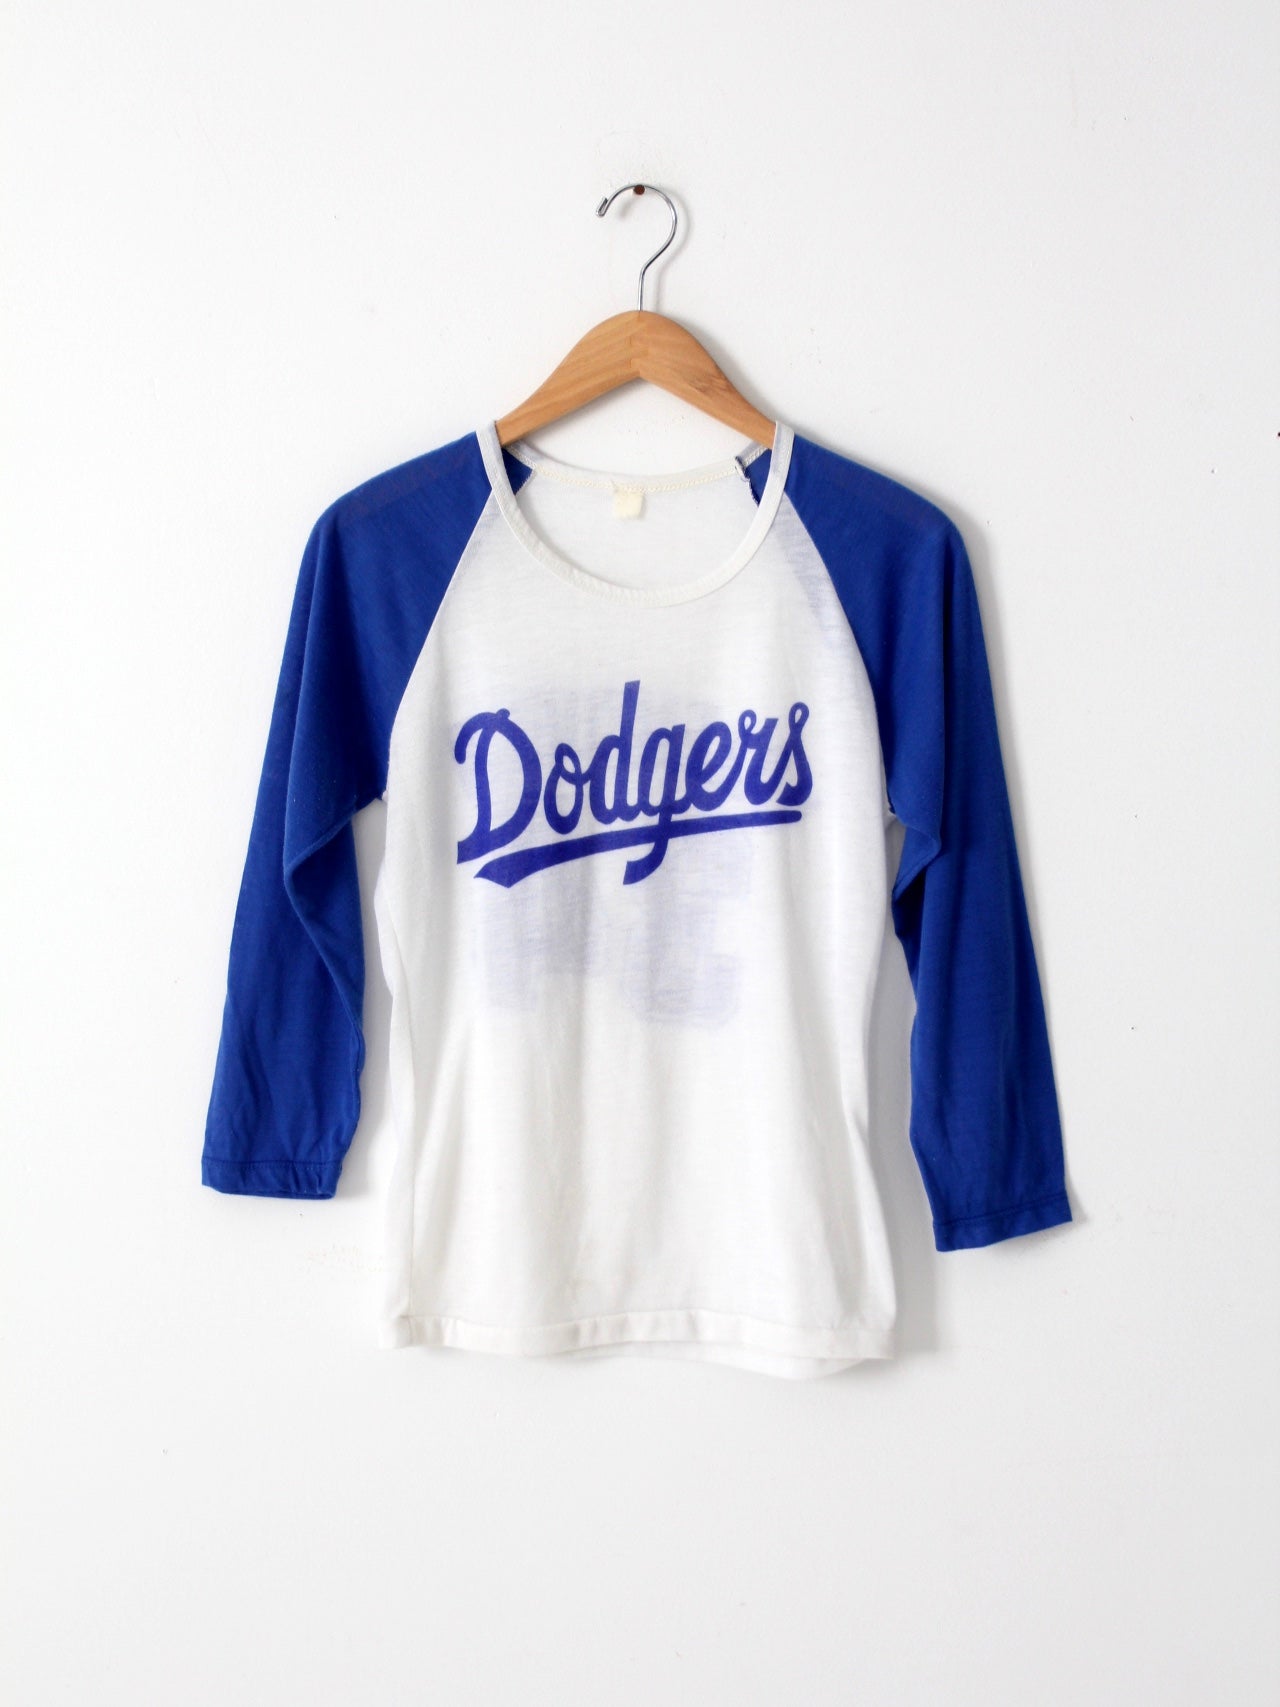 Bleed Blue Shirt, Dodger Fan T-shirt, Baseball Novelty Tee-Teevkd